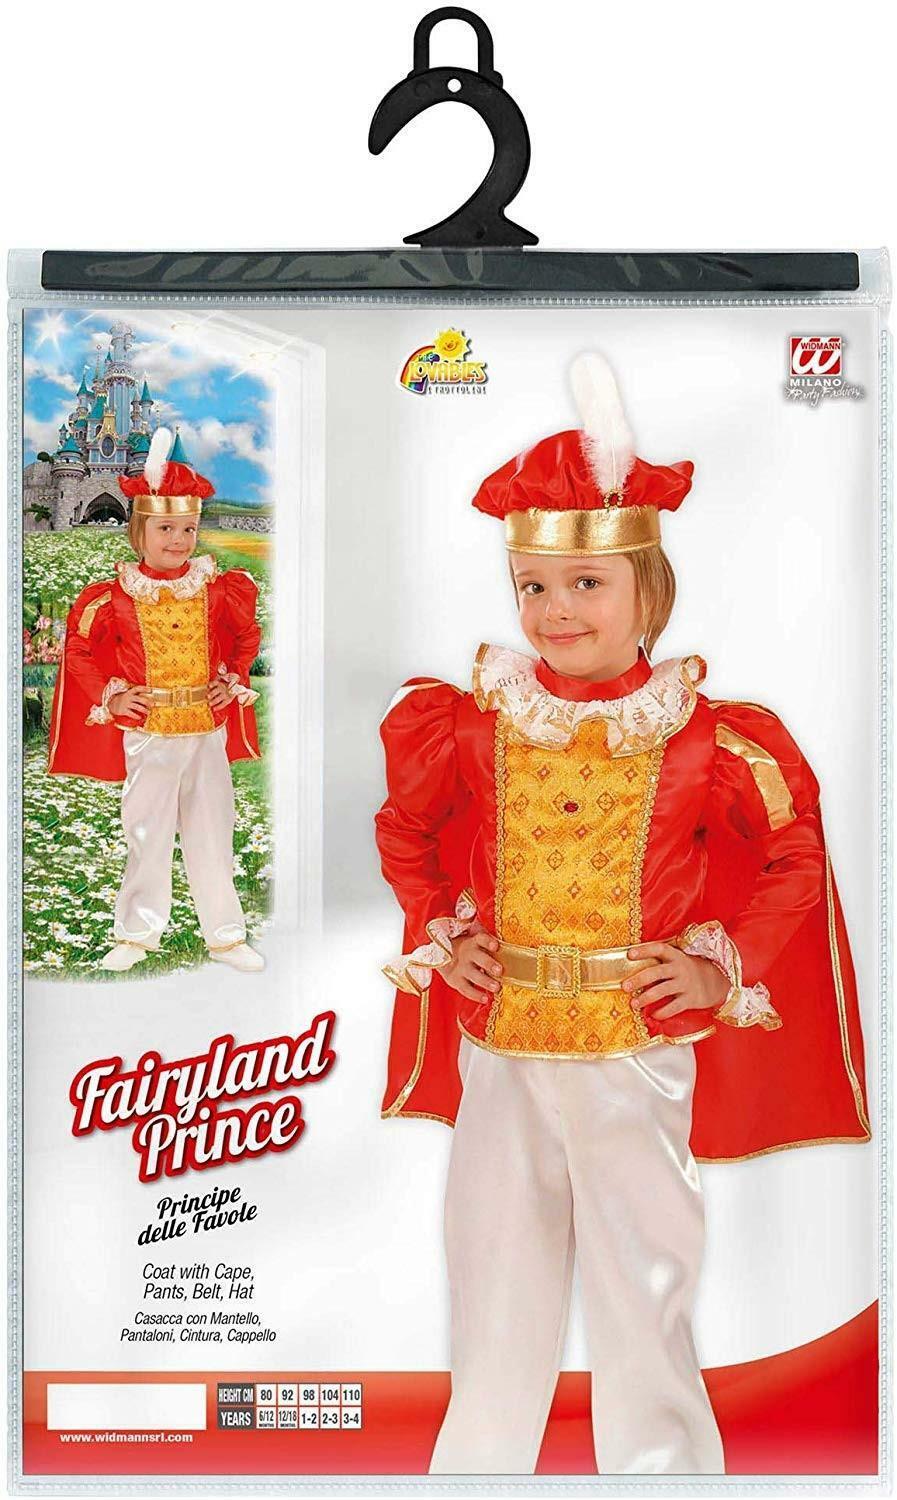 widmann costume principe delle favole taglia 1/2 anni